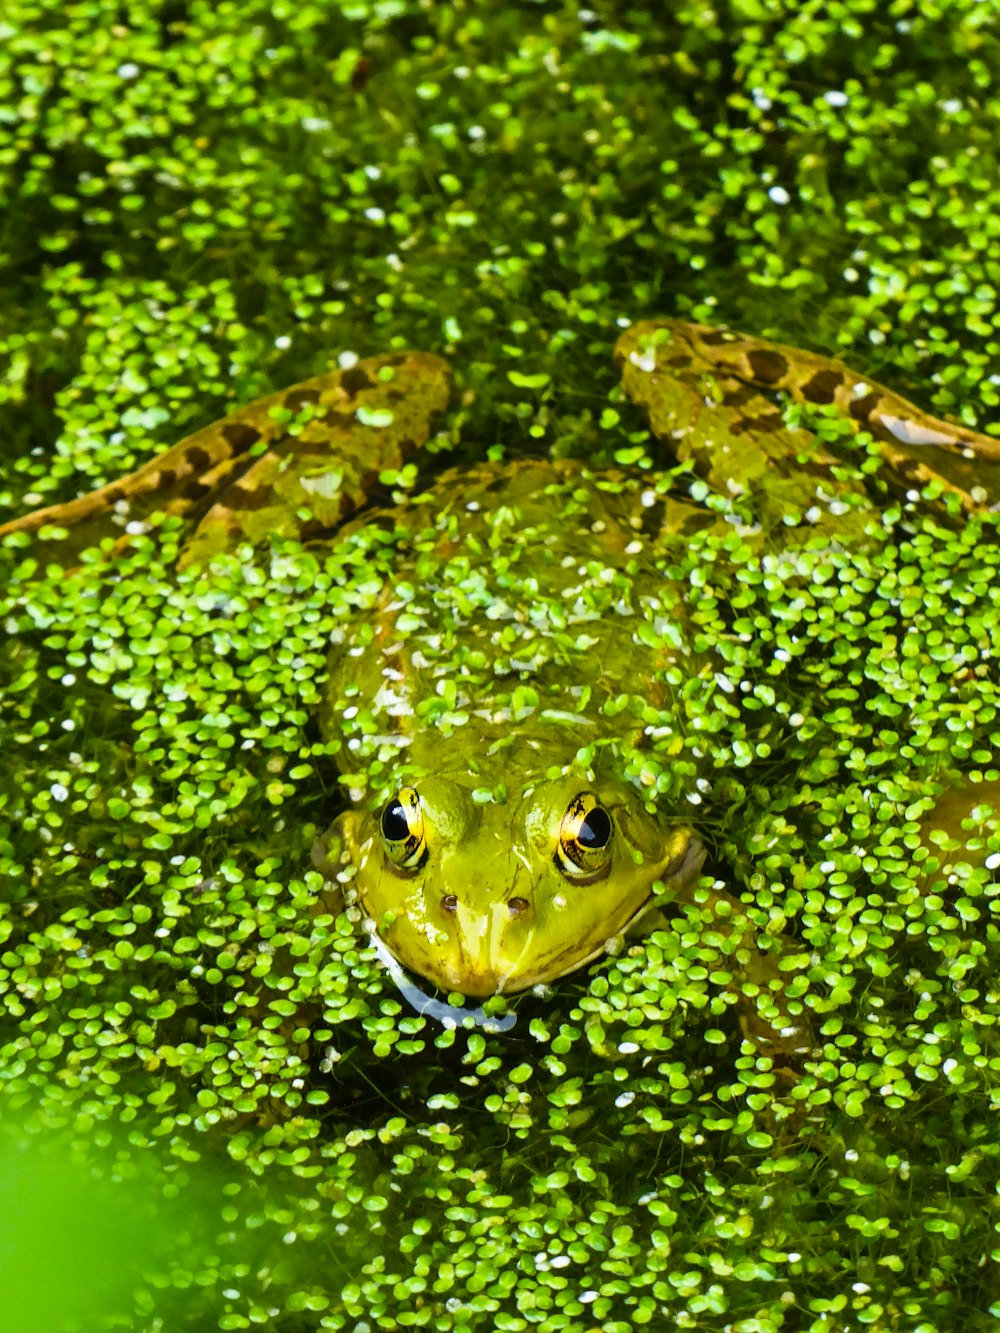 grenouille brune et noire sur l’eau verte